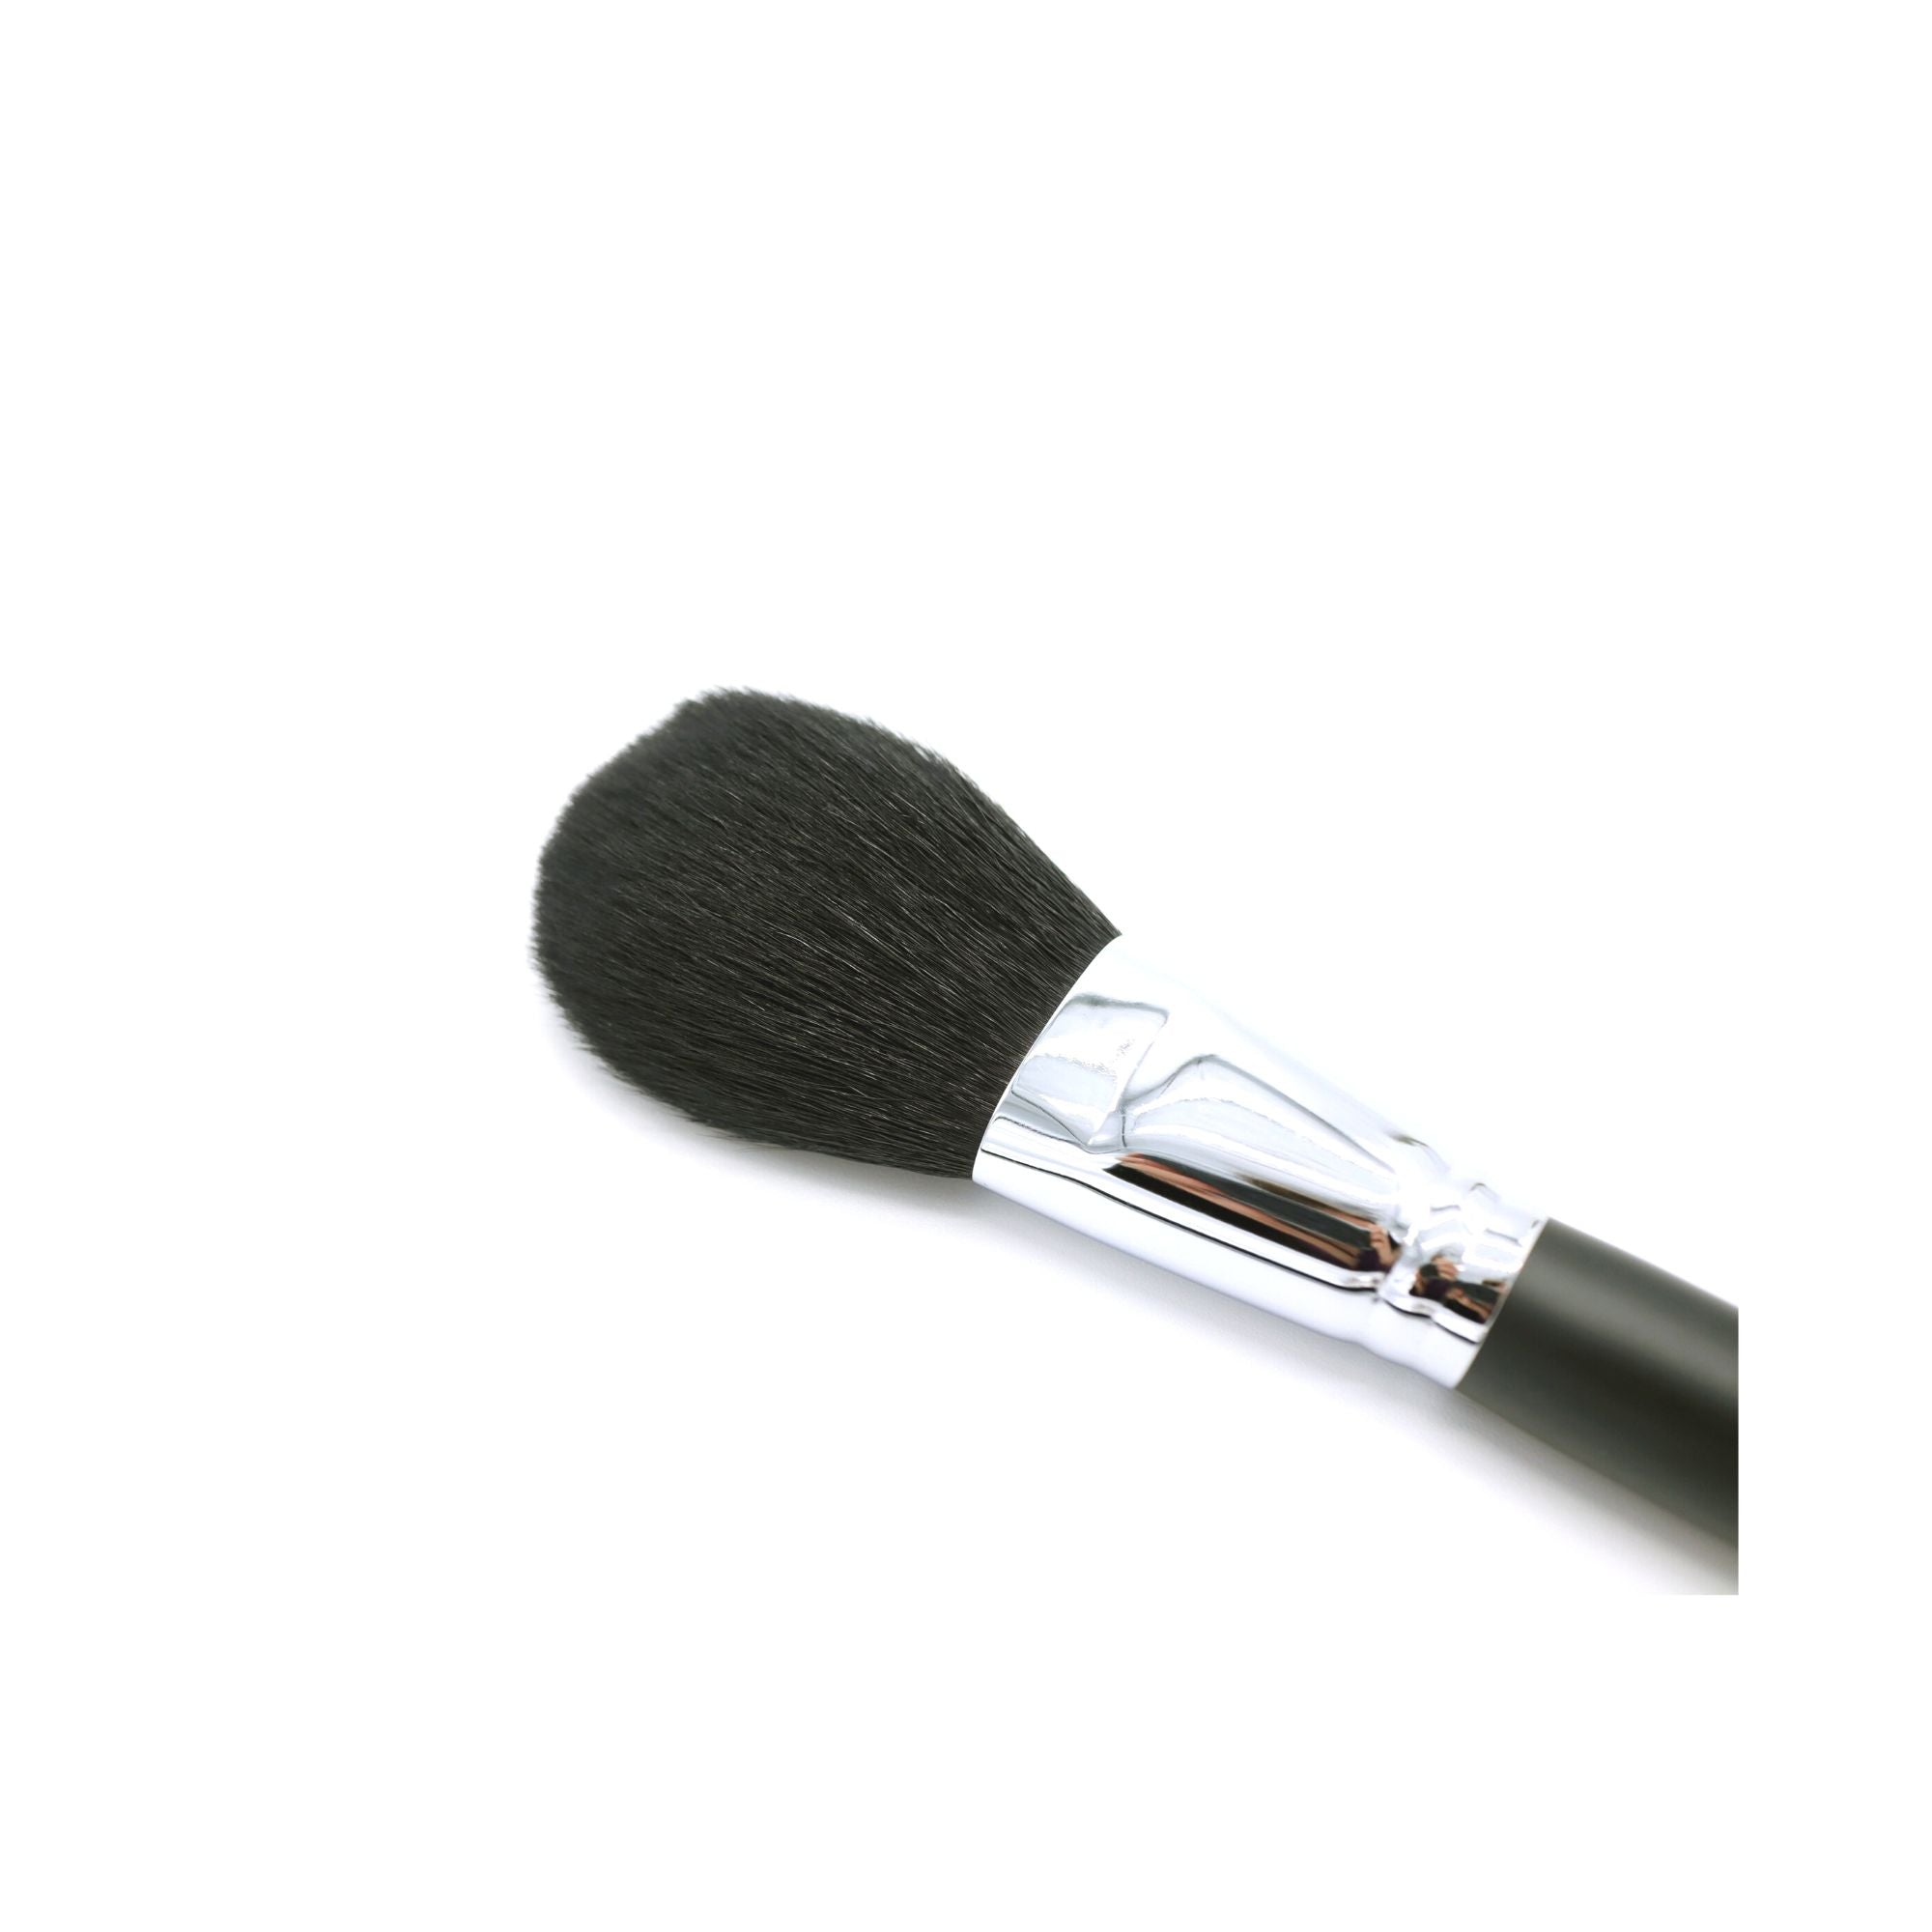 Koyudo Powder Brush (2210-3) - Fude Beauty, Japanese Makeup Brushes